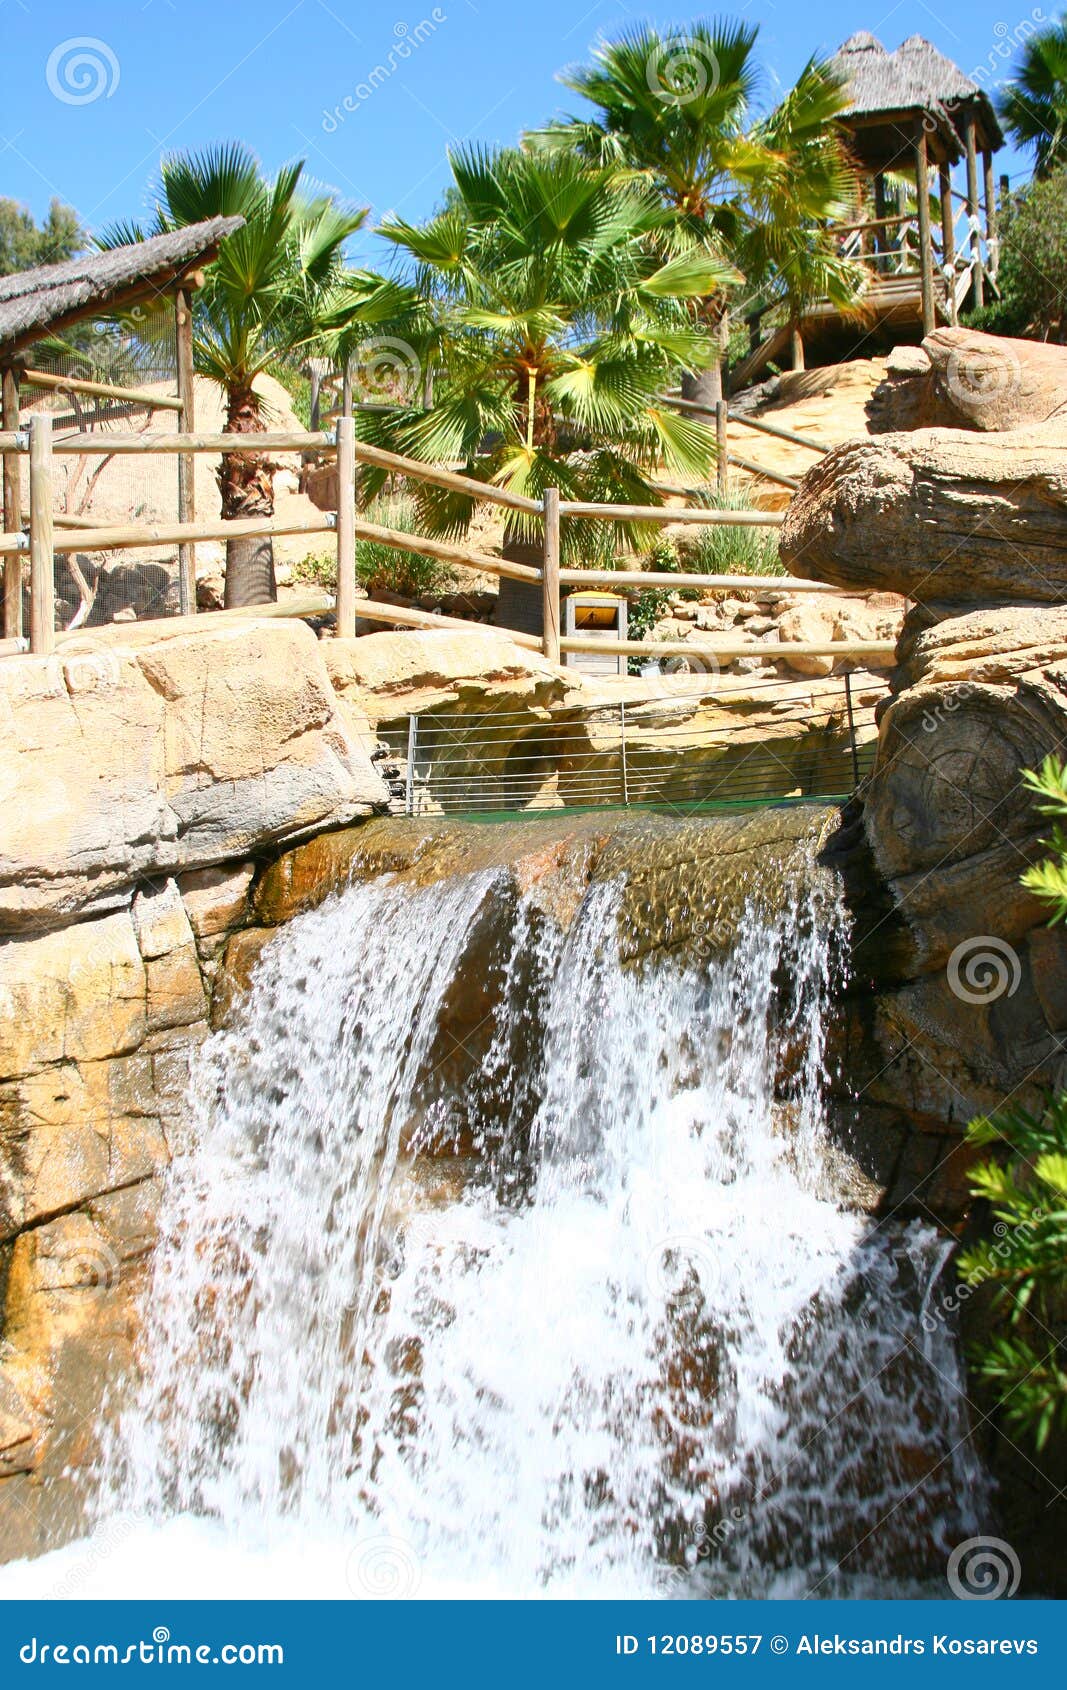 waterfall in zoo, tabernas, almeria